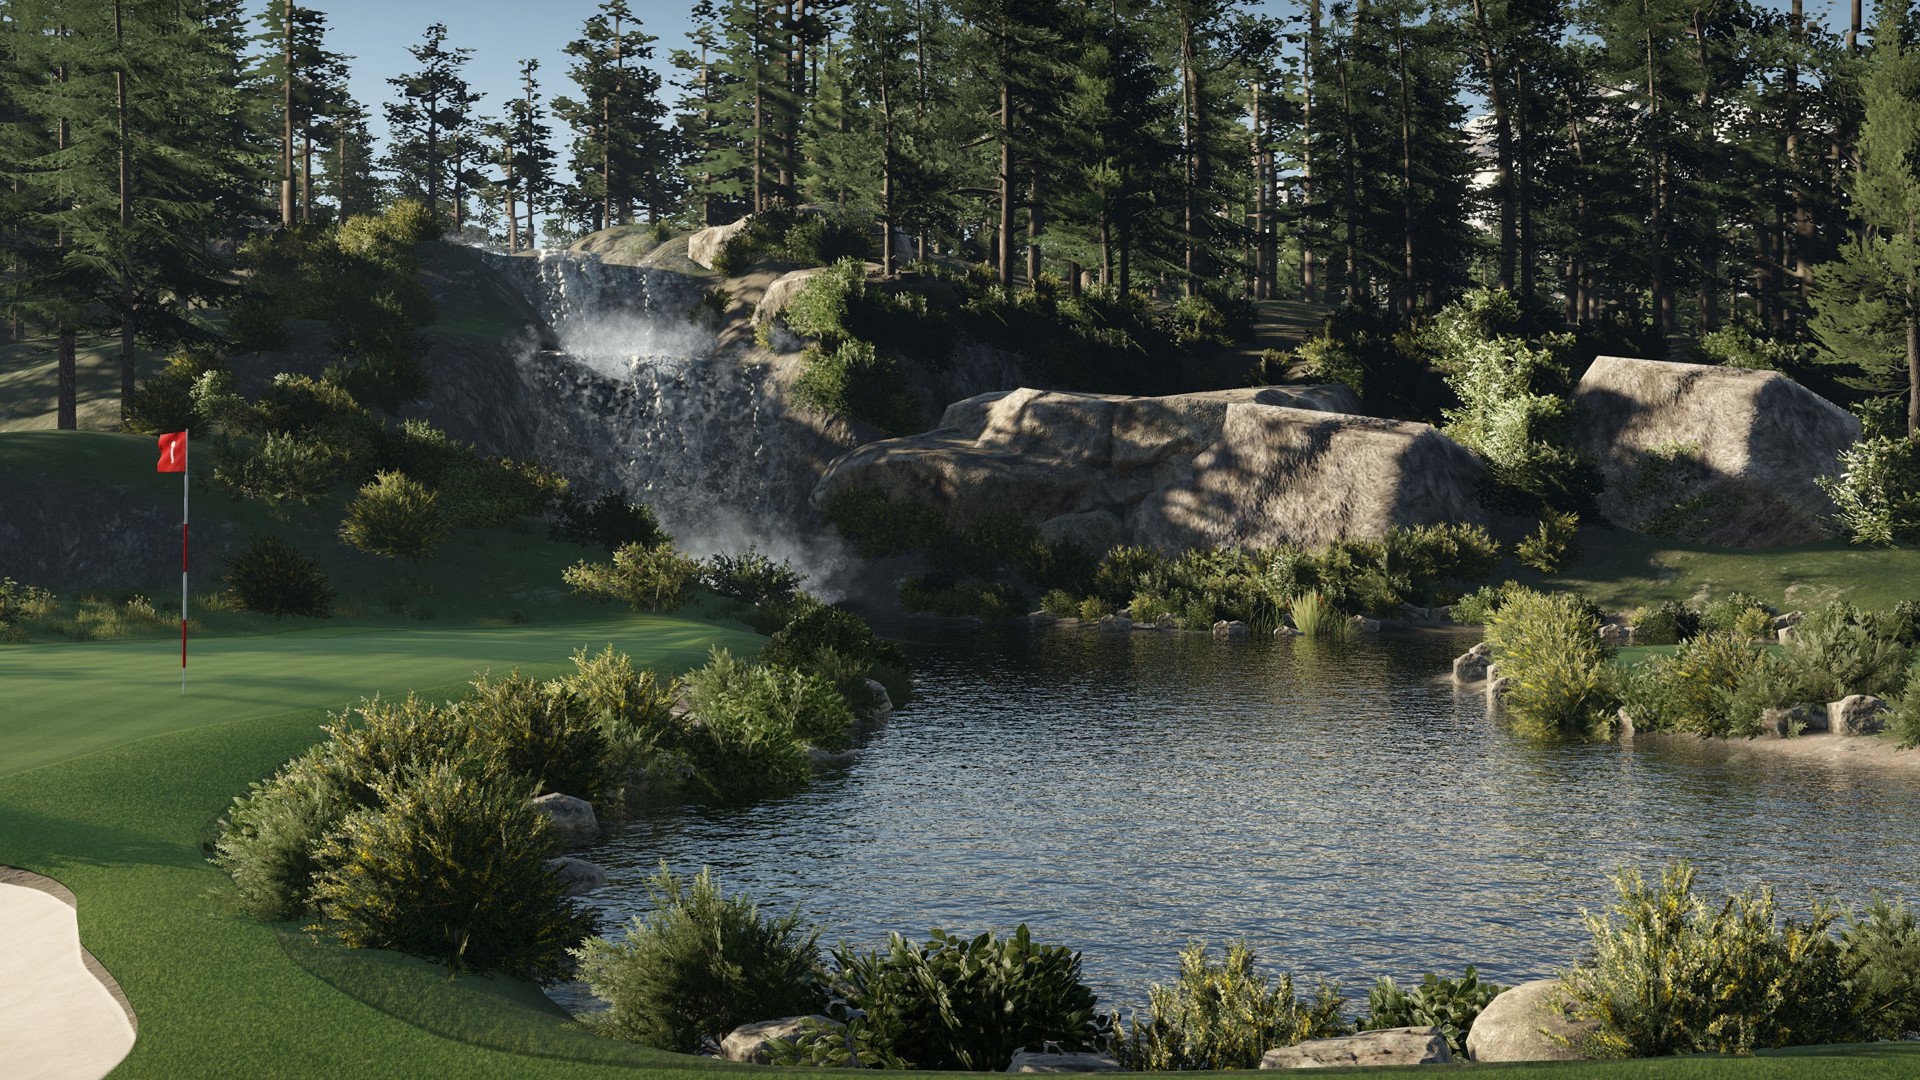 The Golf Club 2 [Steam]